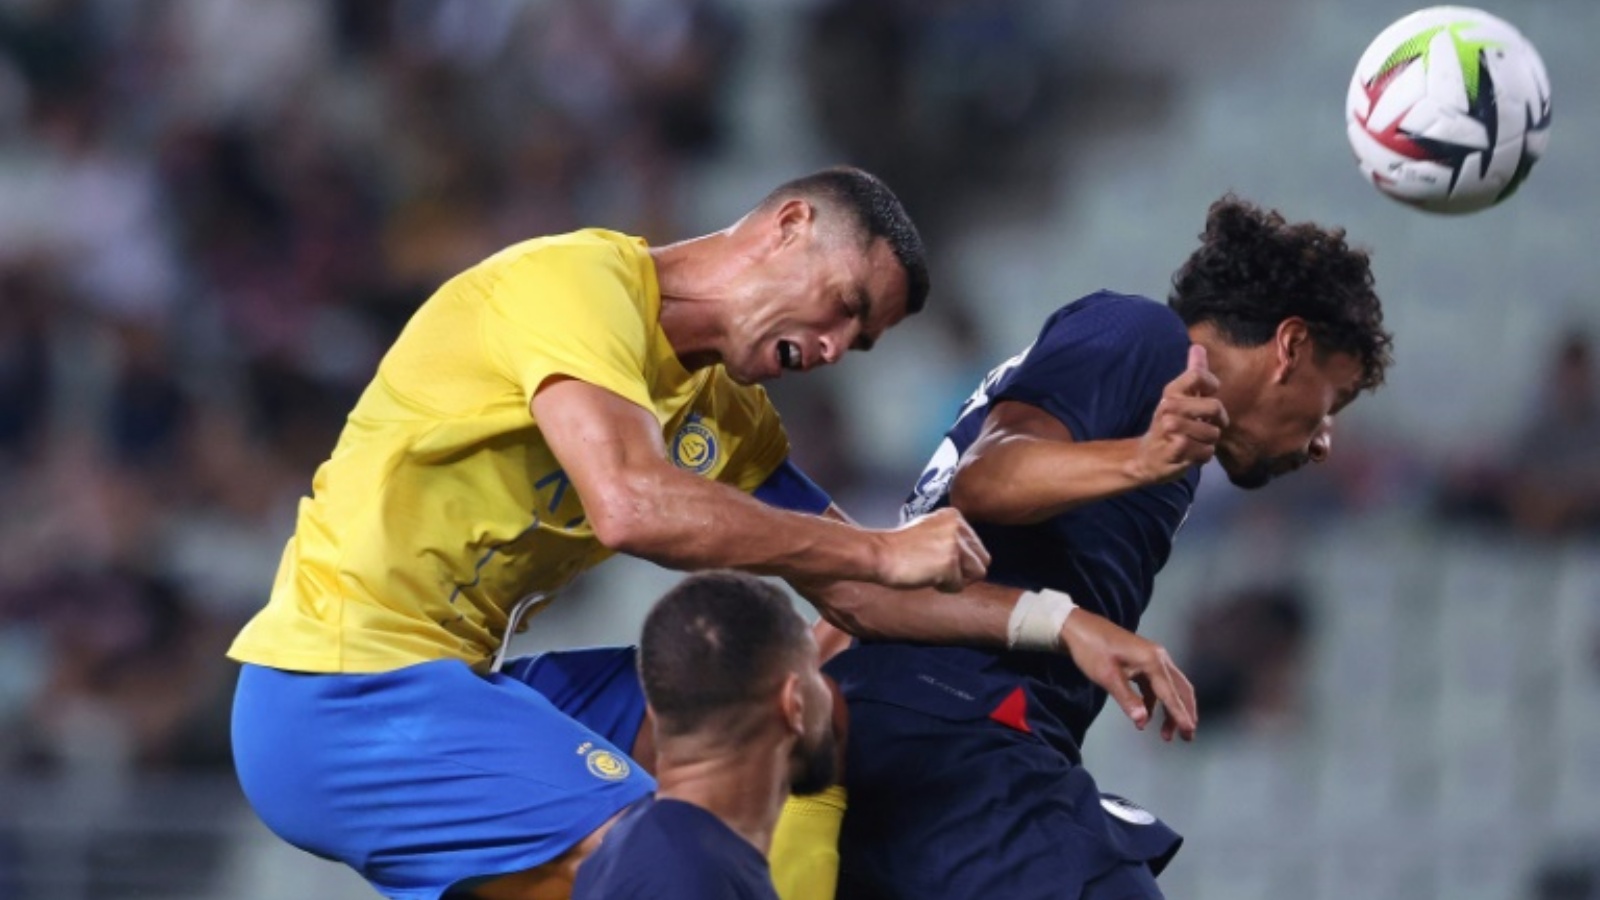 البرتغالي كريستيانو رونالدو (يسار) يتنافس مع البرازيلي ماركينيوس على الكرة خلال مباراة النصر وباريس سان جرمان